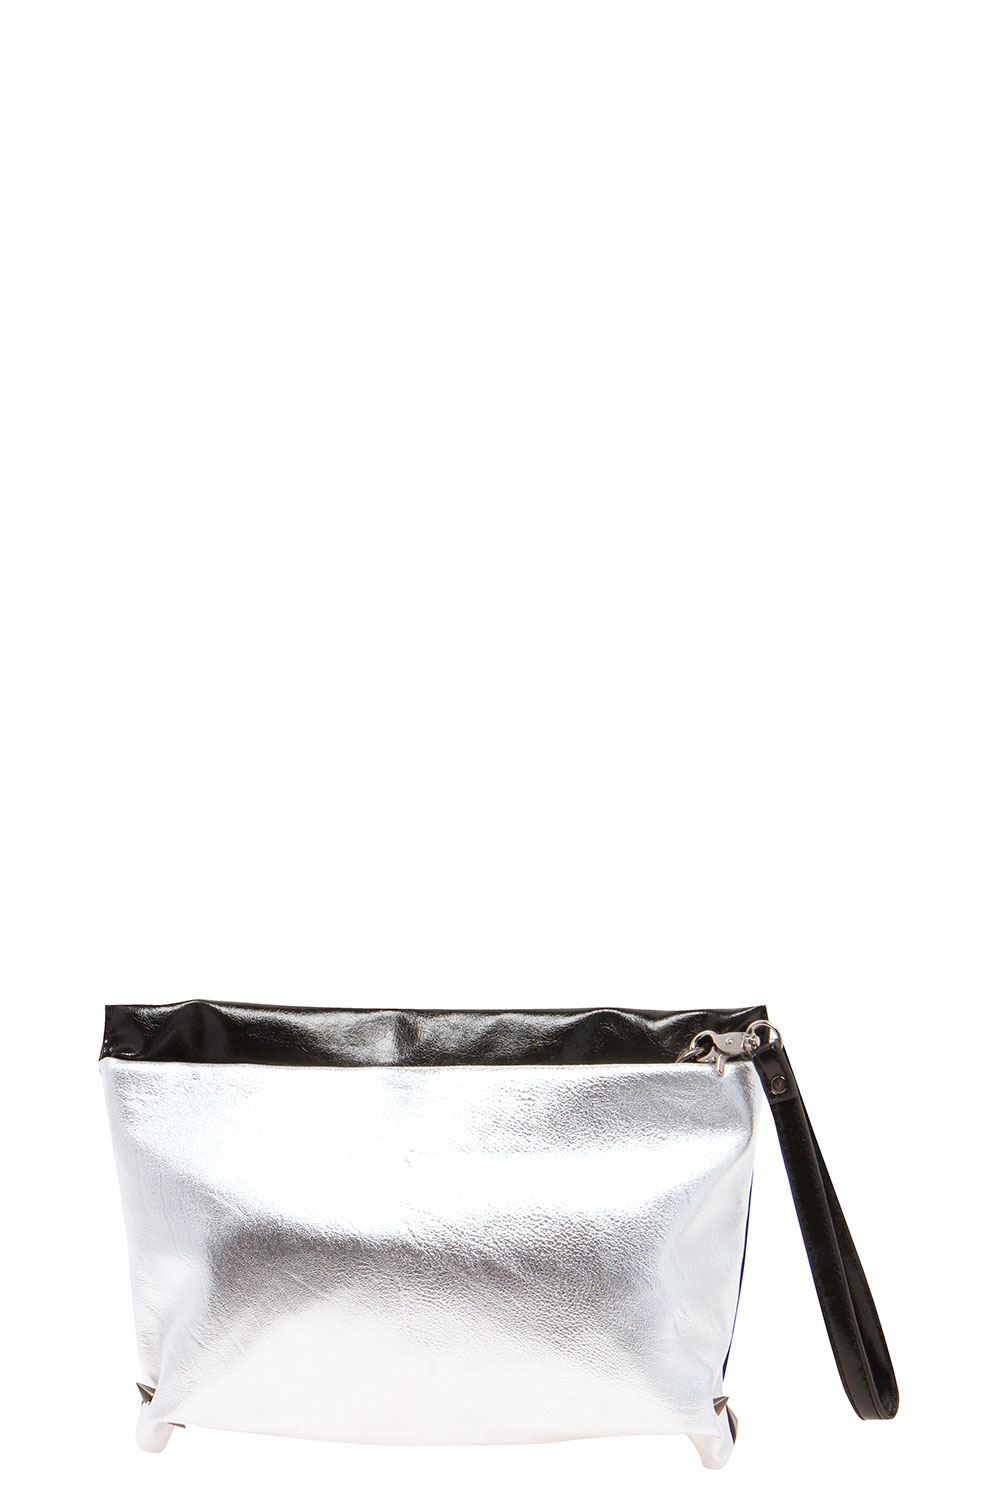 boohoo Tillie Pocket Front Clutch Bag - silver,